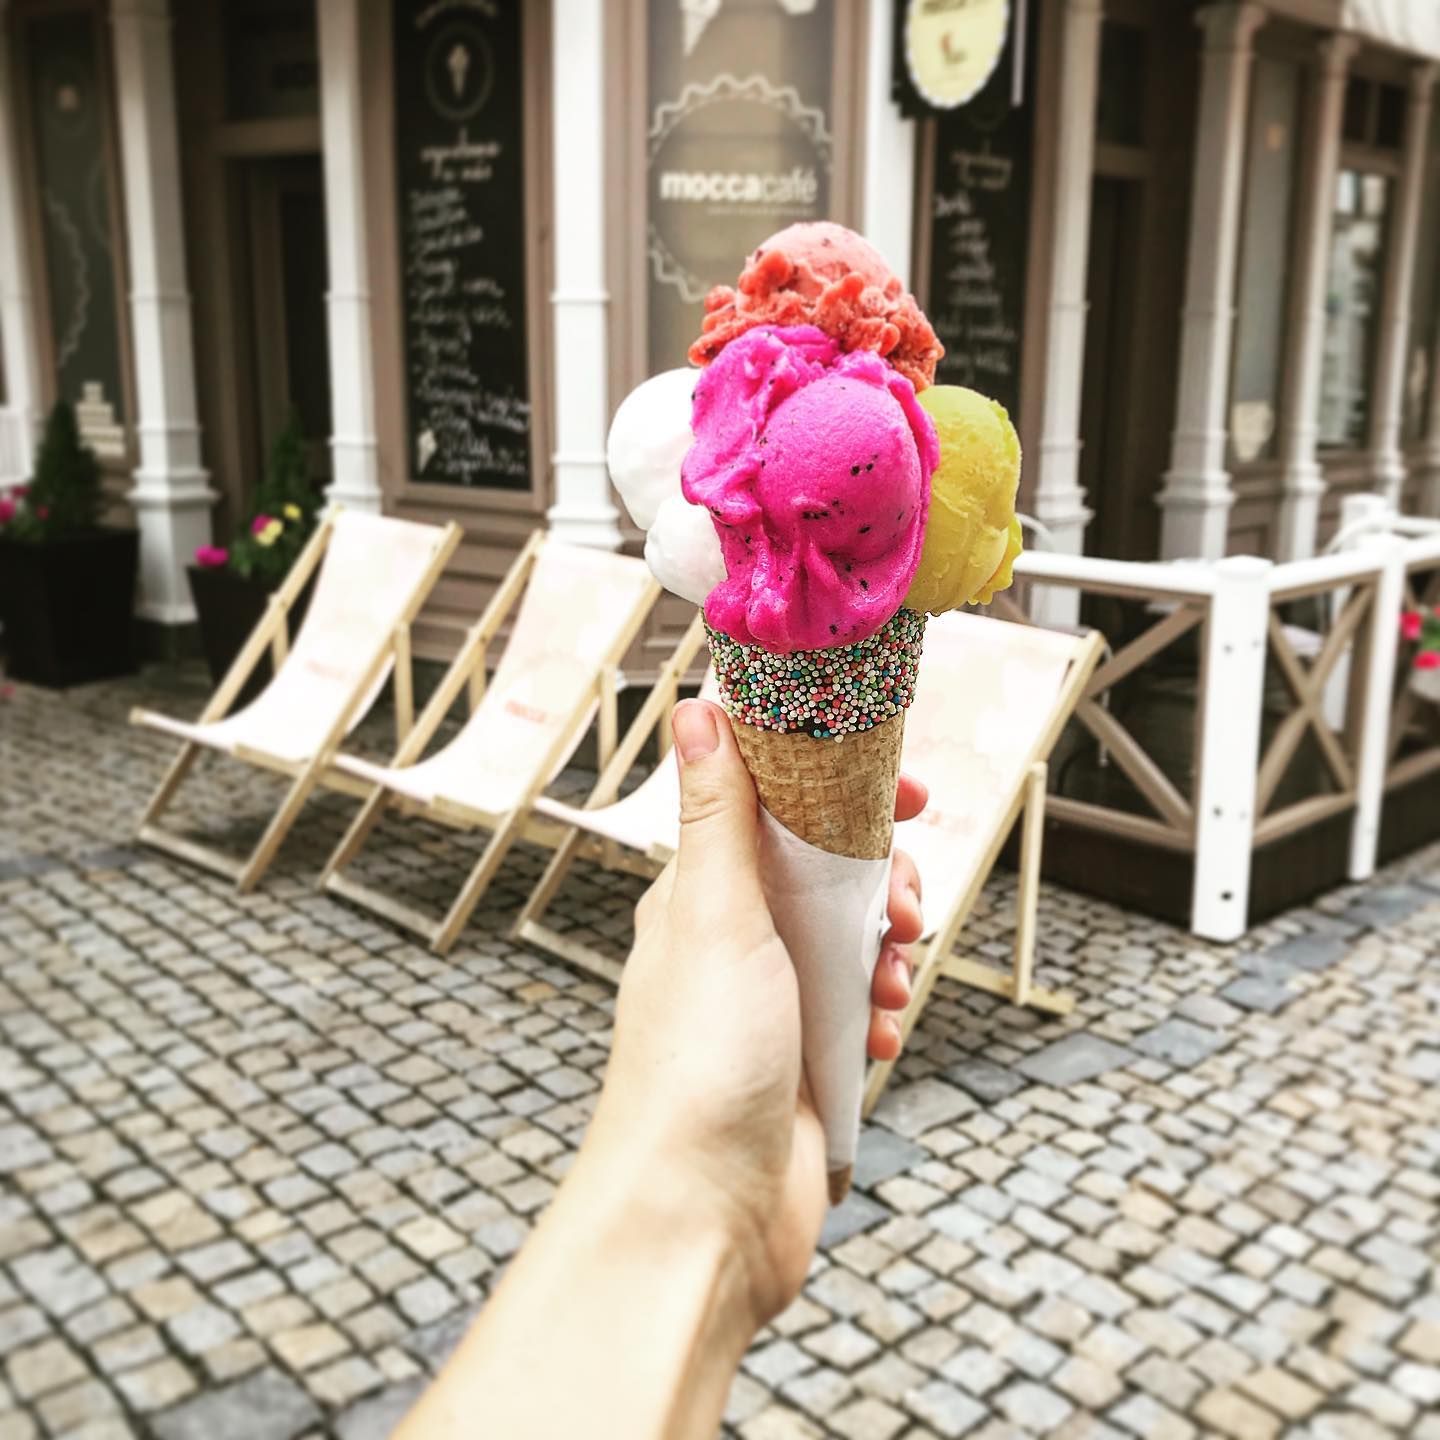 Persone da tutta la Repubblica Ceca vengono a Tábor per il gelato, e uno dei suoi gusti ha colpito anche gli italiani